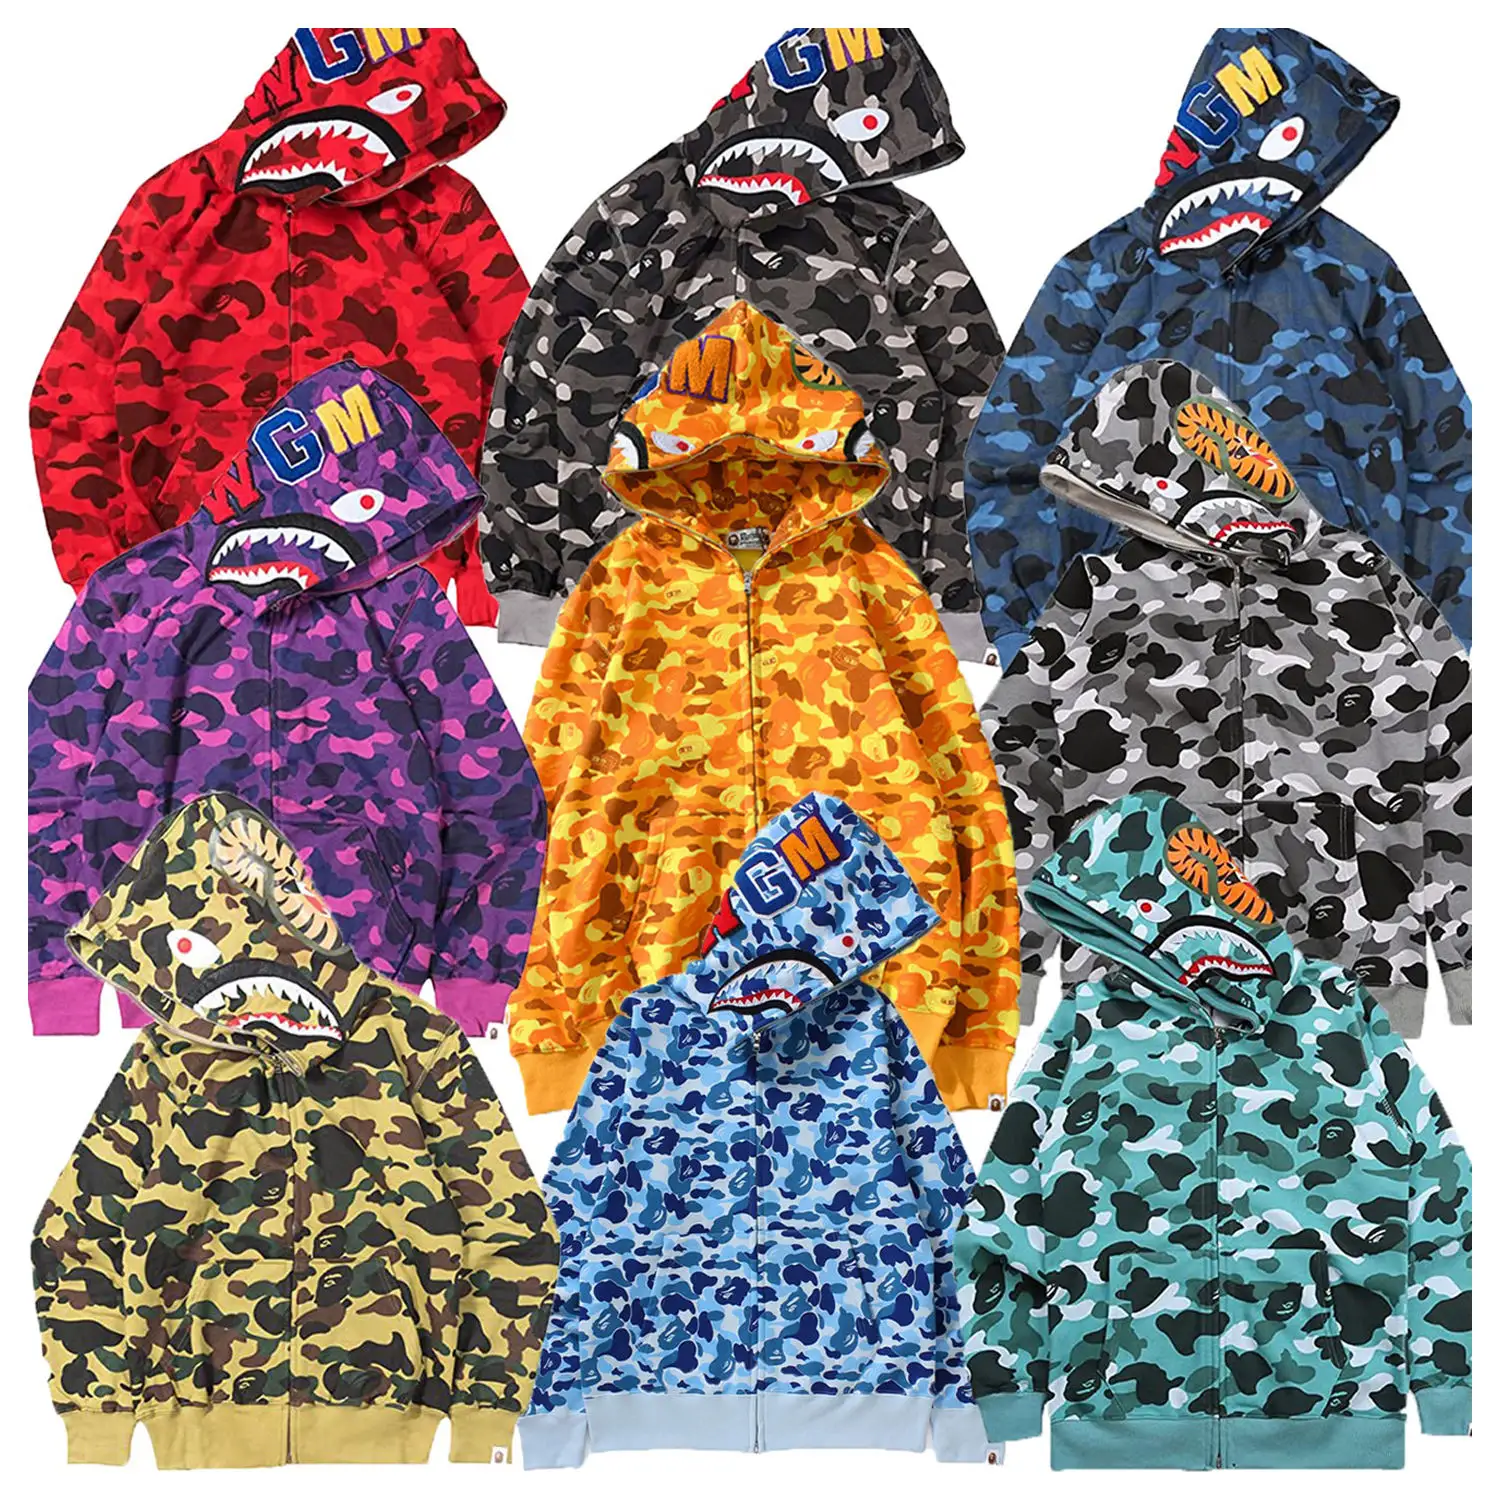 Wholesale hoodie oversized men hape shark Hoodies 3D digital printing hooded fashion sweater zipper hoodie sweatshirt jacket